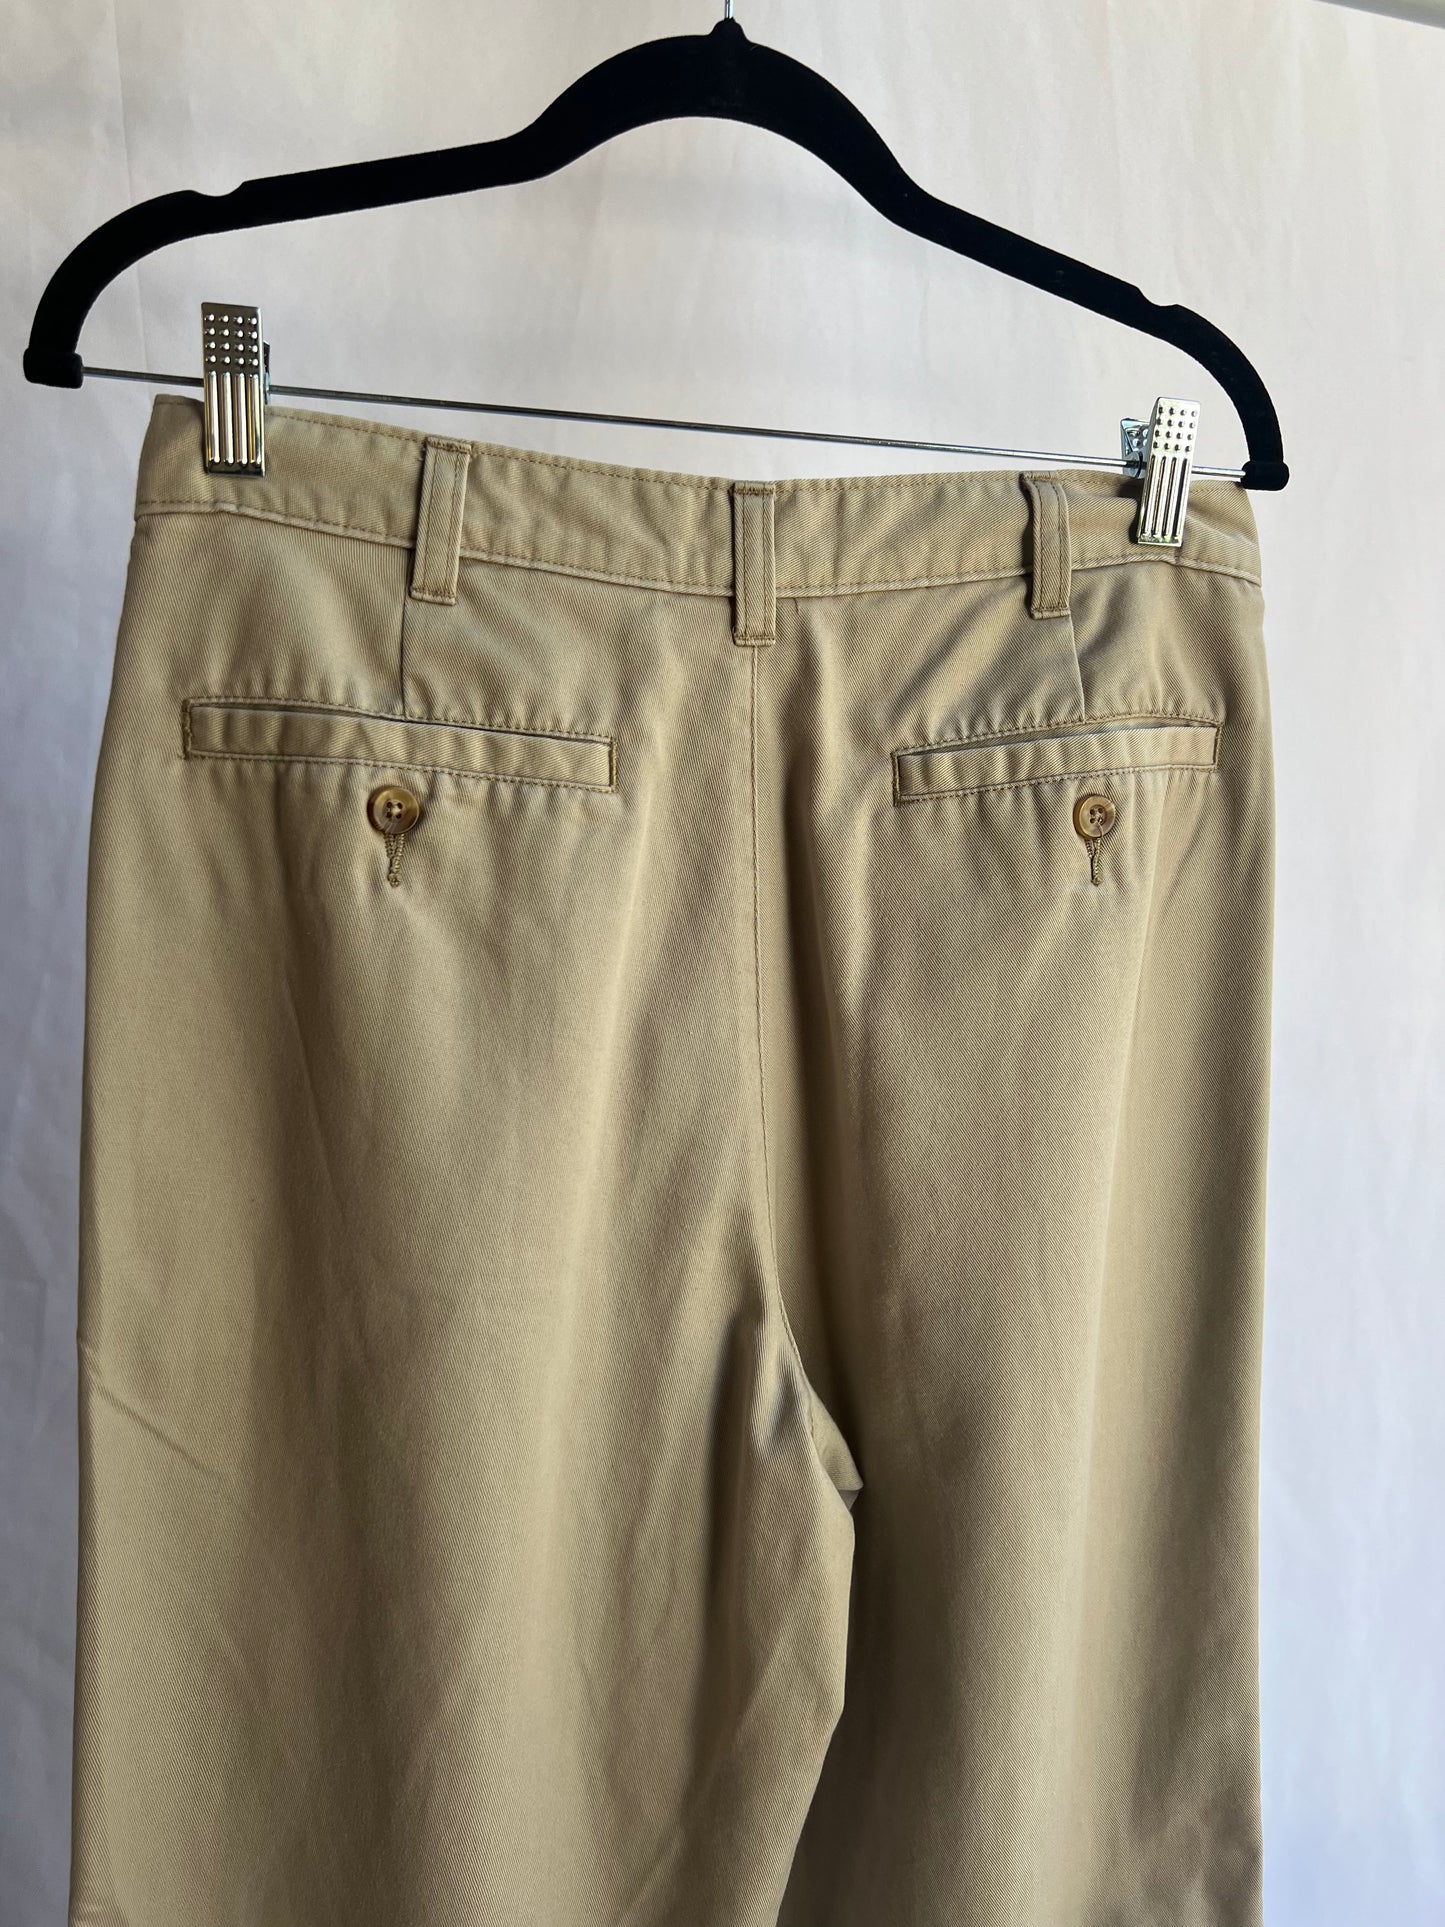 Khaki Trousers - 29"